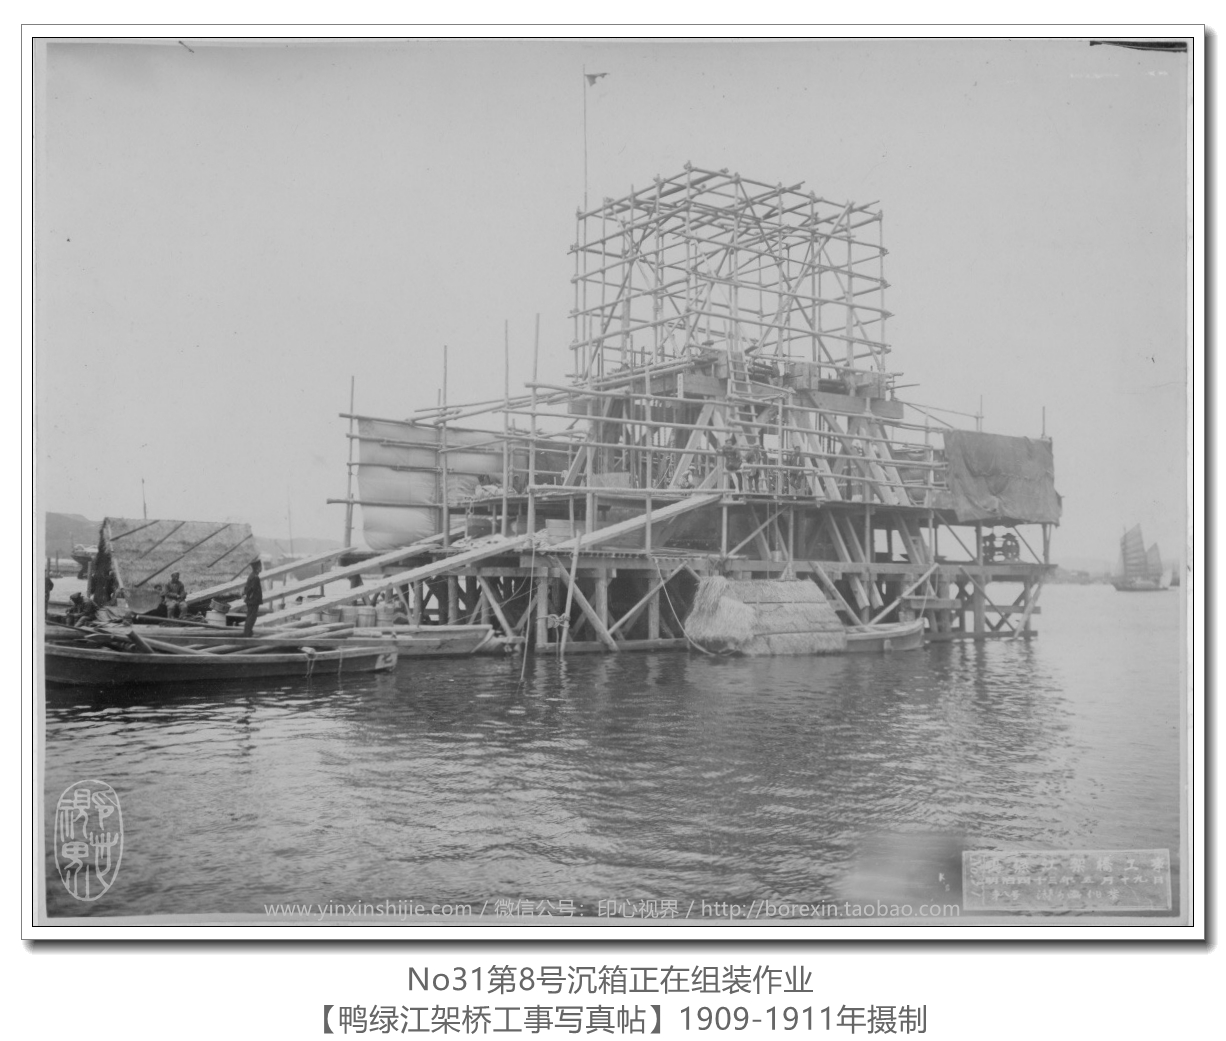 【万卷书】《鸭绿江架桥工事写真帖1911》No31第8号沉箱正在组装作业